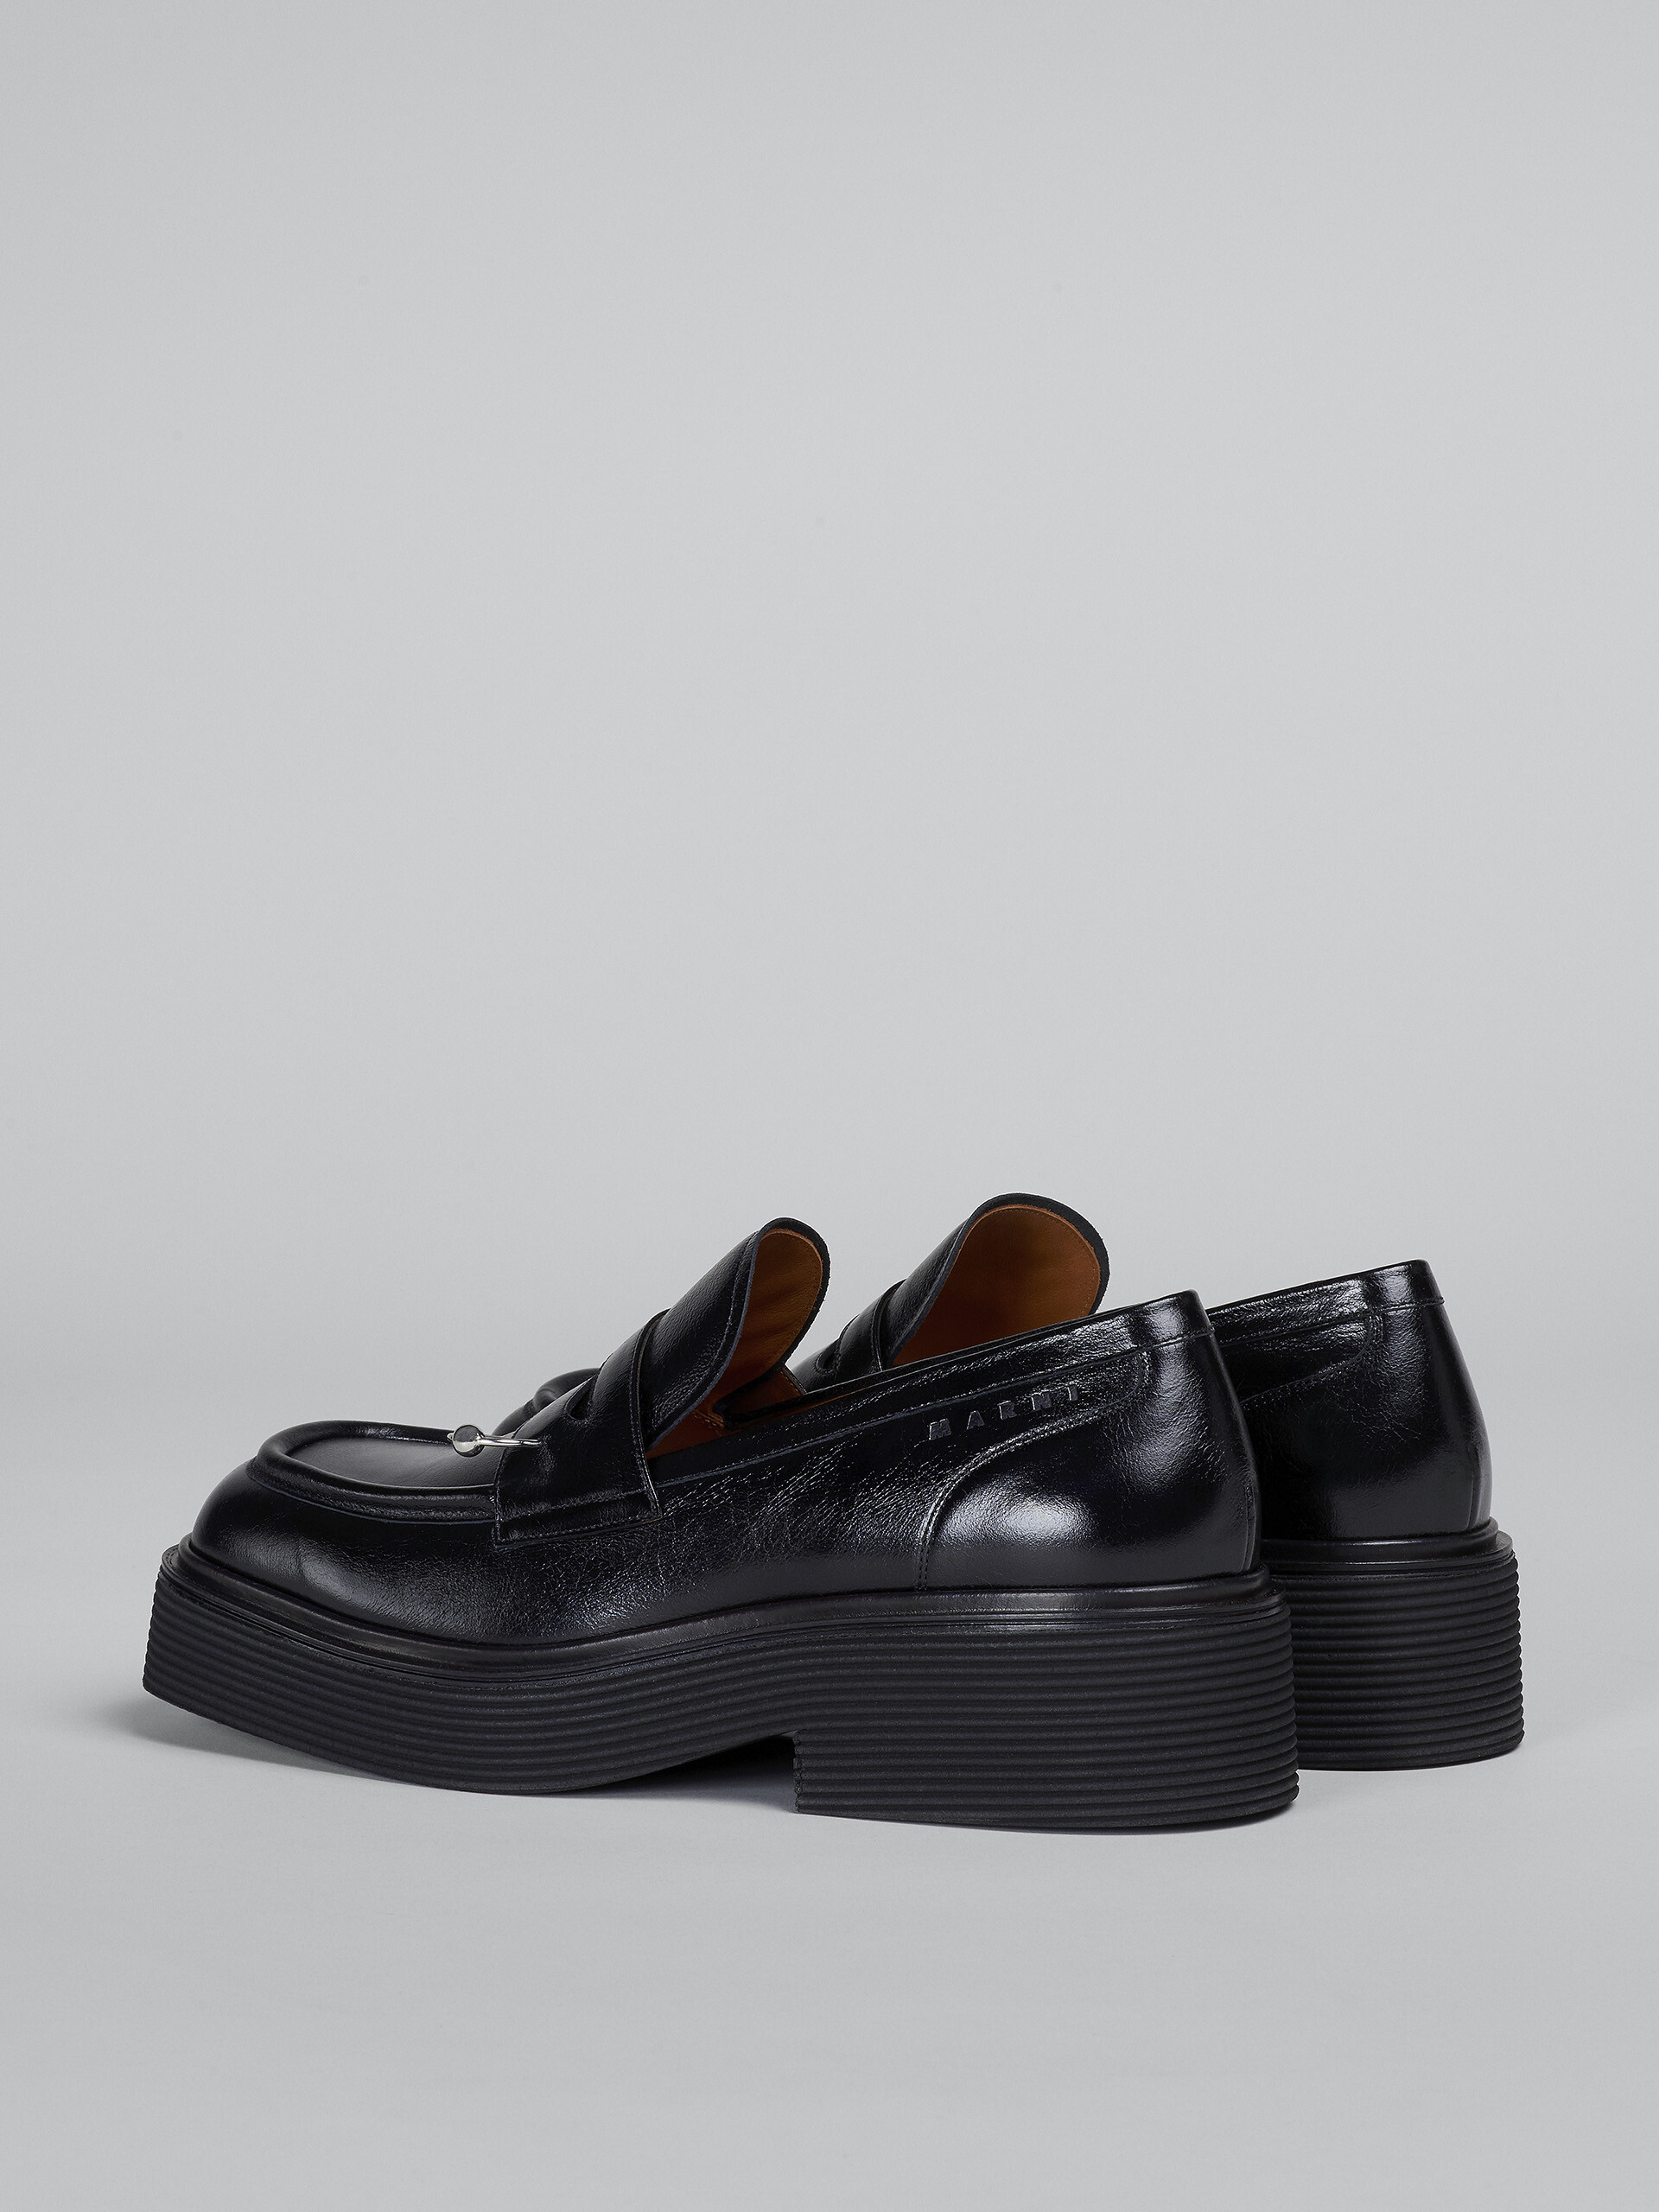 Mocasín de piel brillante negra - Zapatos con cordones - Image 3